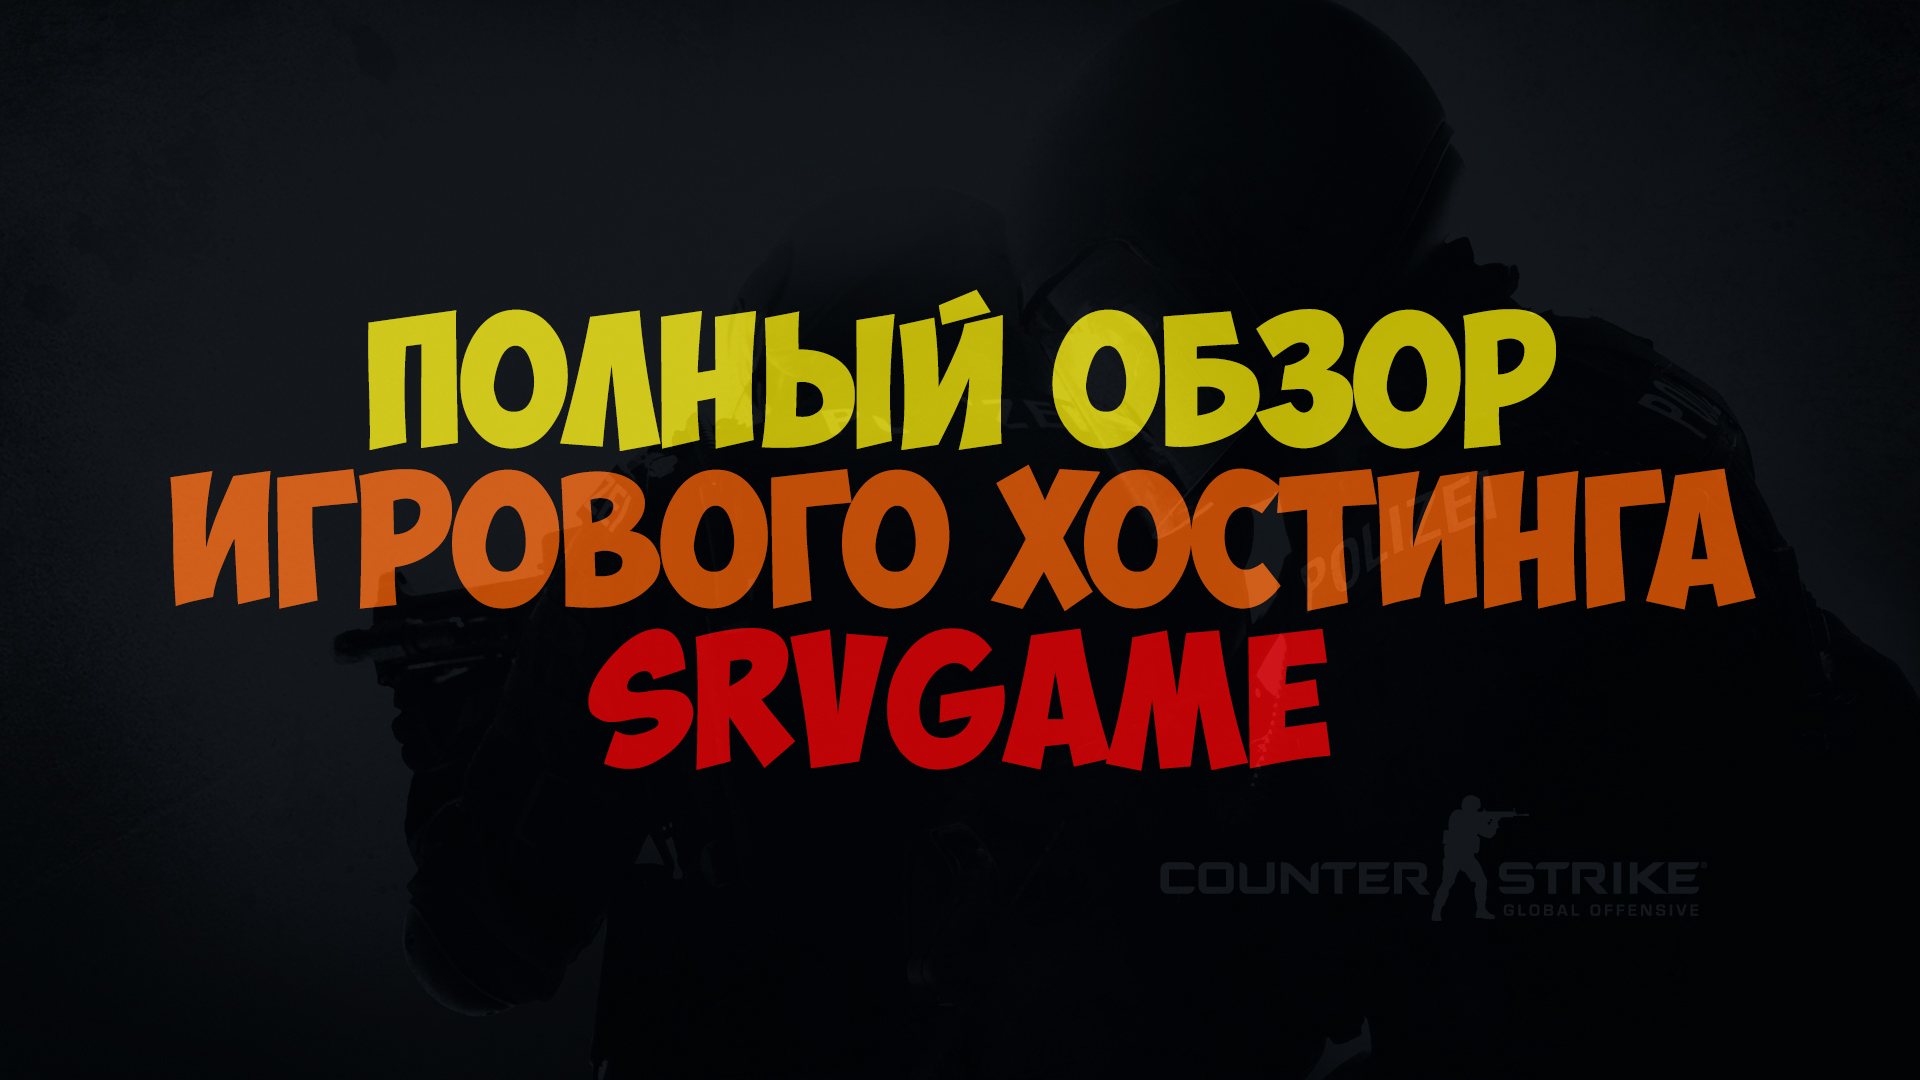 Обзор хостинга srvgame.ru. Какие могут возникнуть проблемы при создании сервера